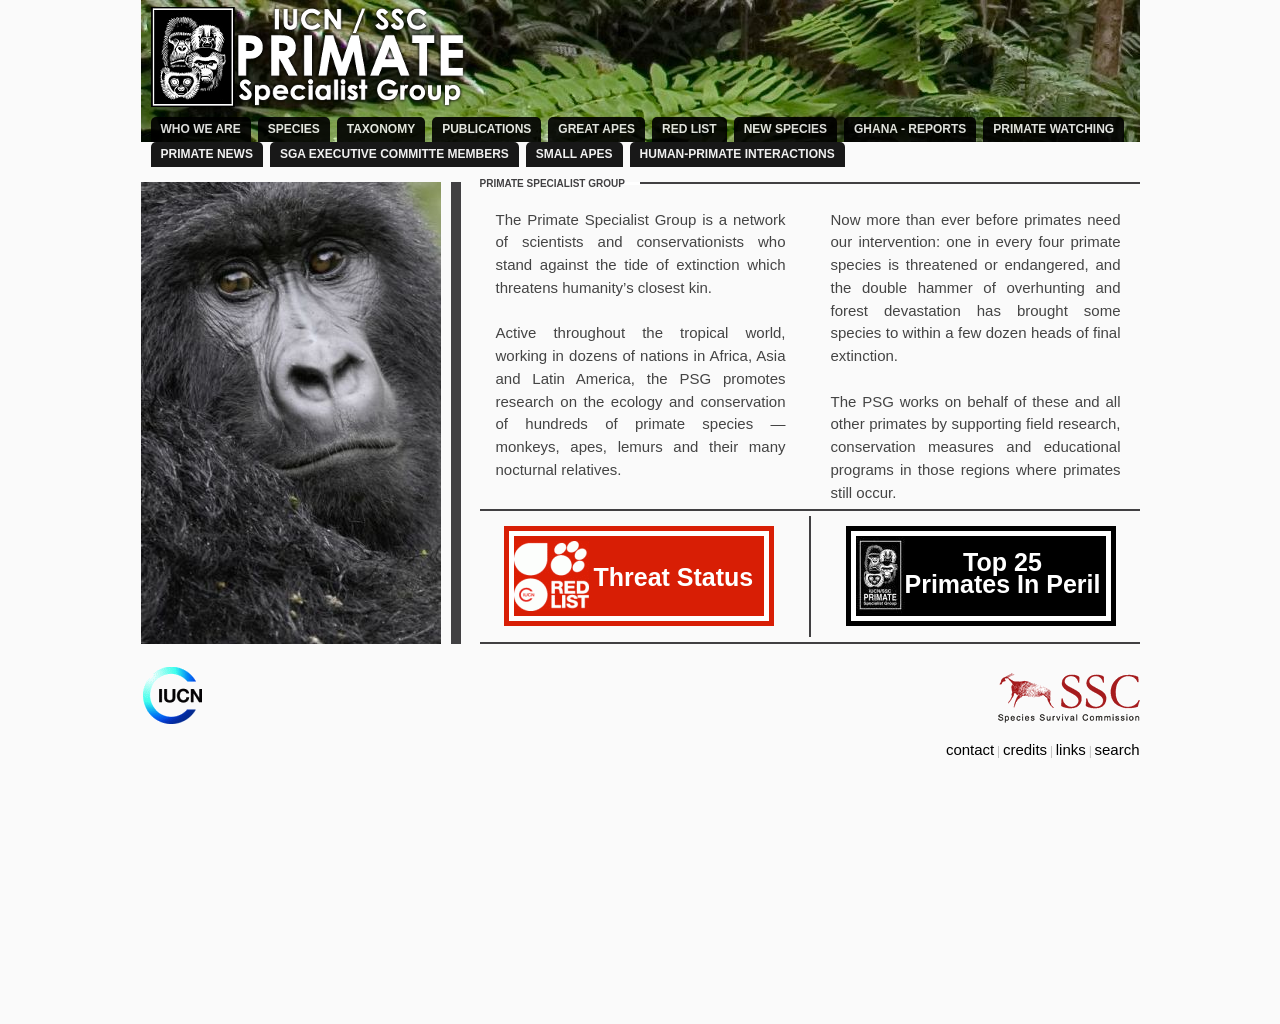 primate-sg.org